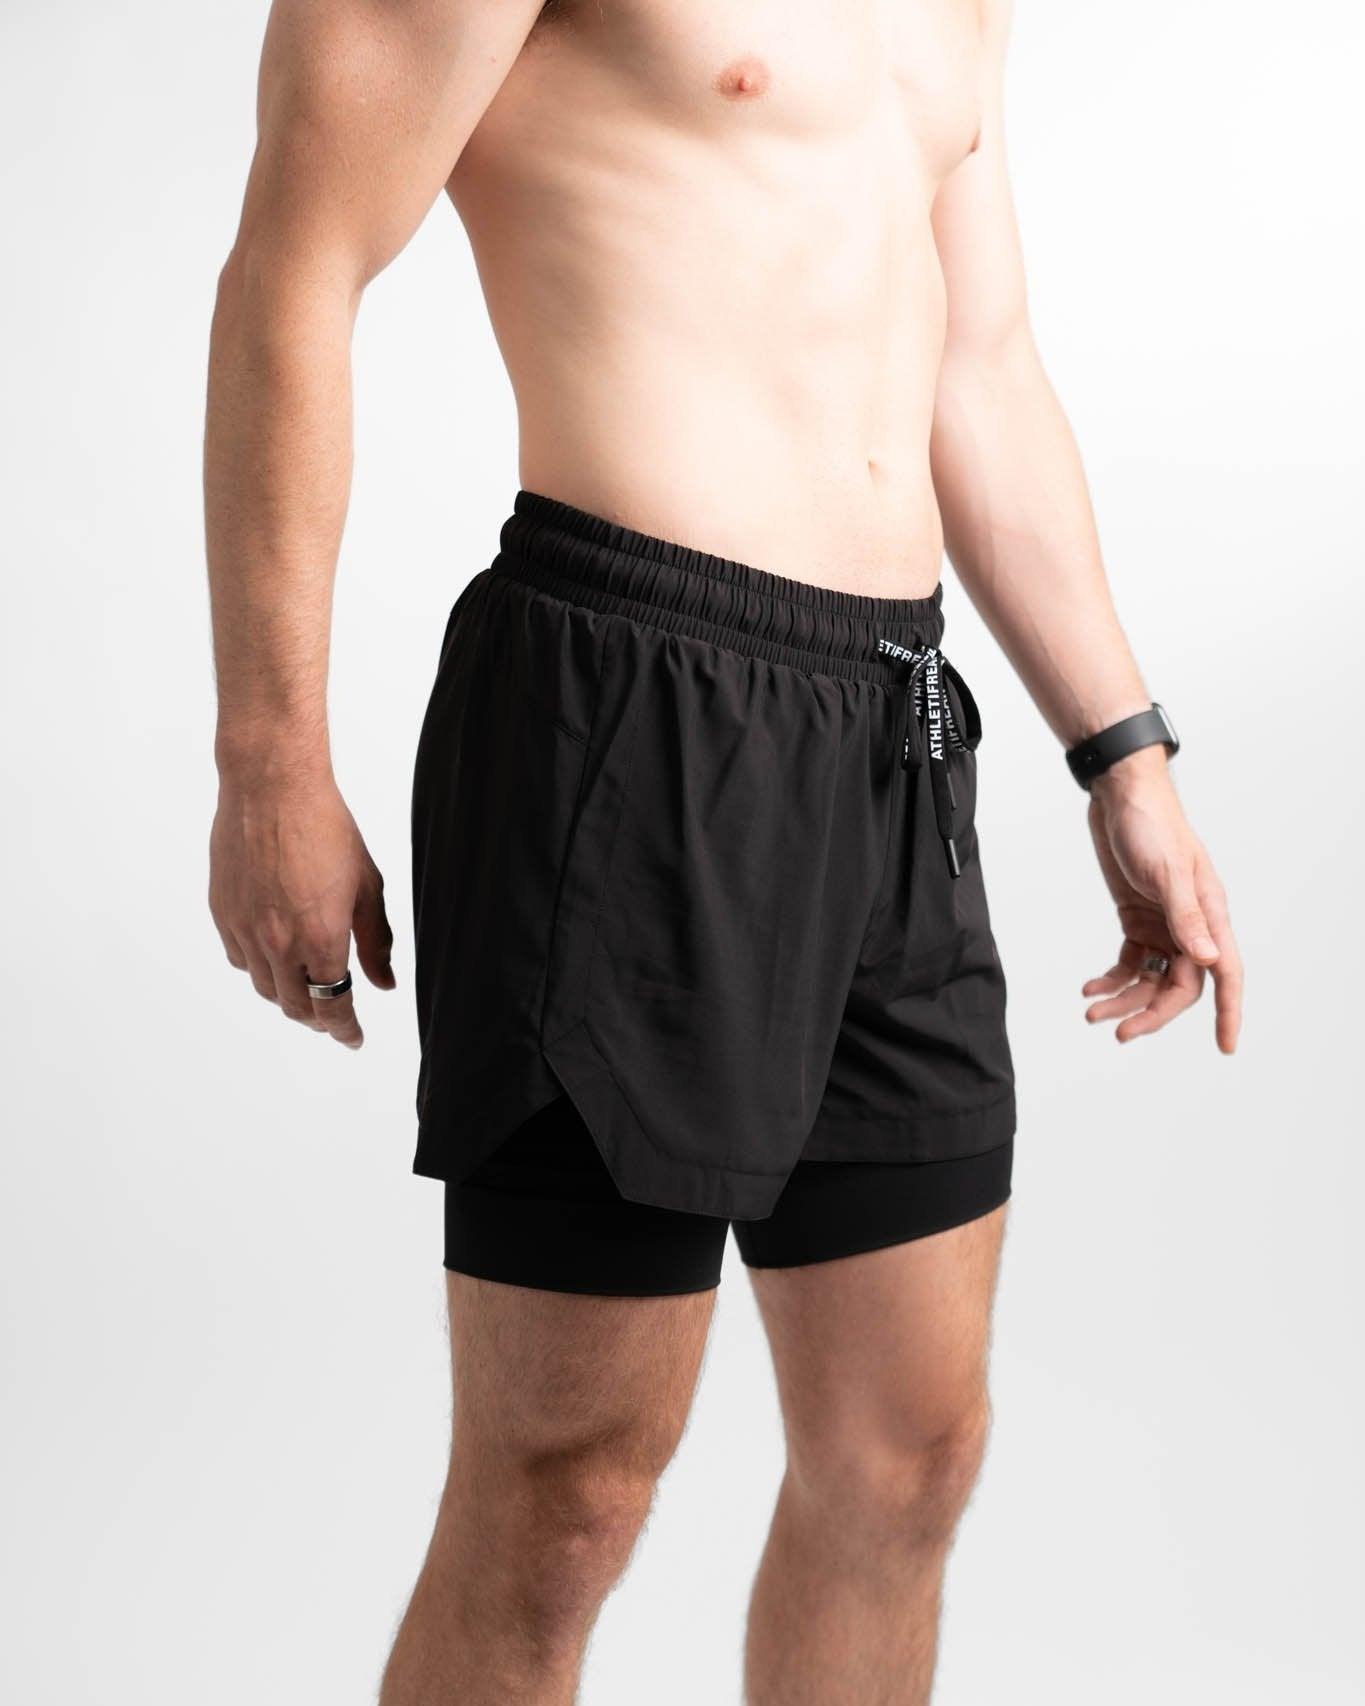 - Athletifreak Training [CORE] Shorts 6\